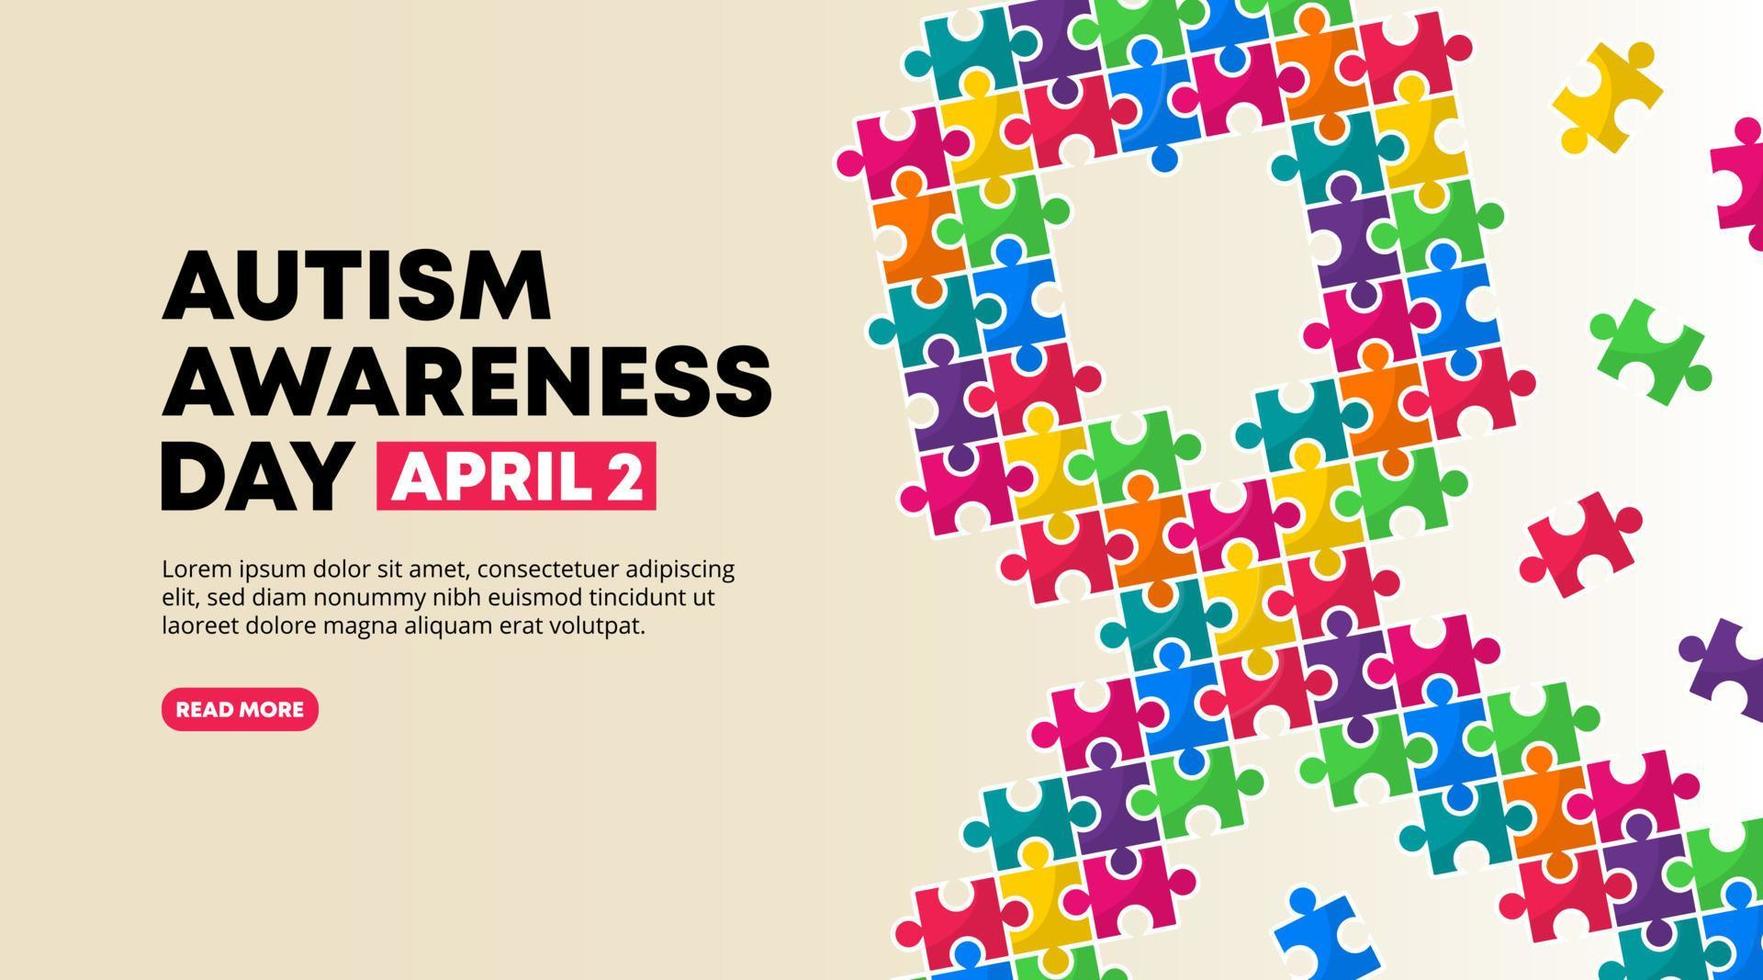 conception de la journée mondiale de sensibilisation à l'autisme avec art de puzzles de ruban coloré vecteur